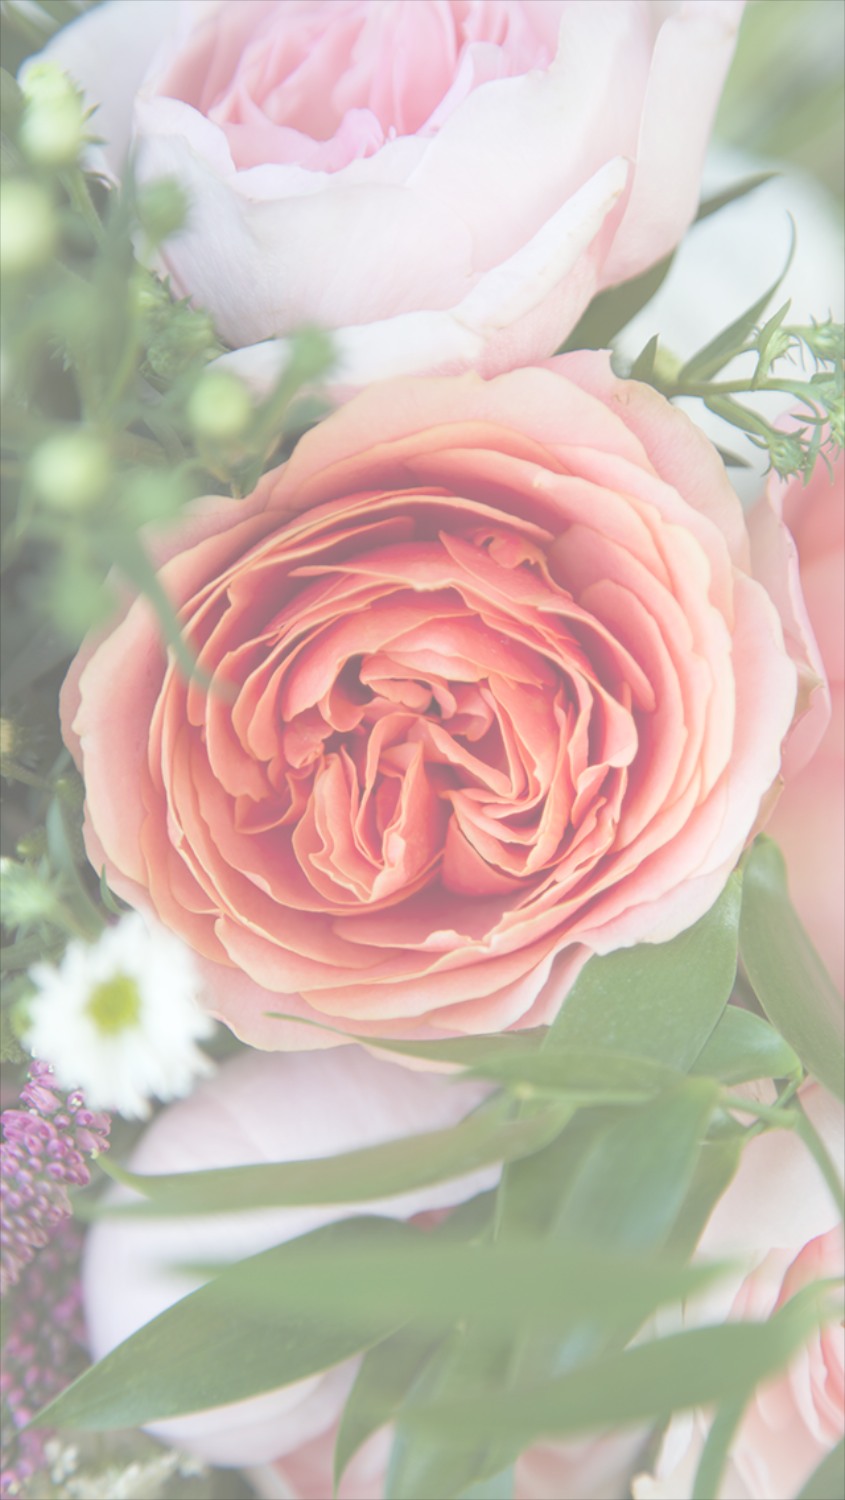 花の電話の壁紙,花,開花植物,庭のバラ,ローズ,ピンク